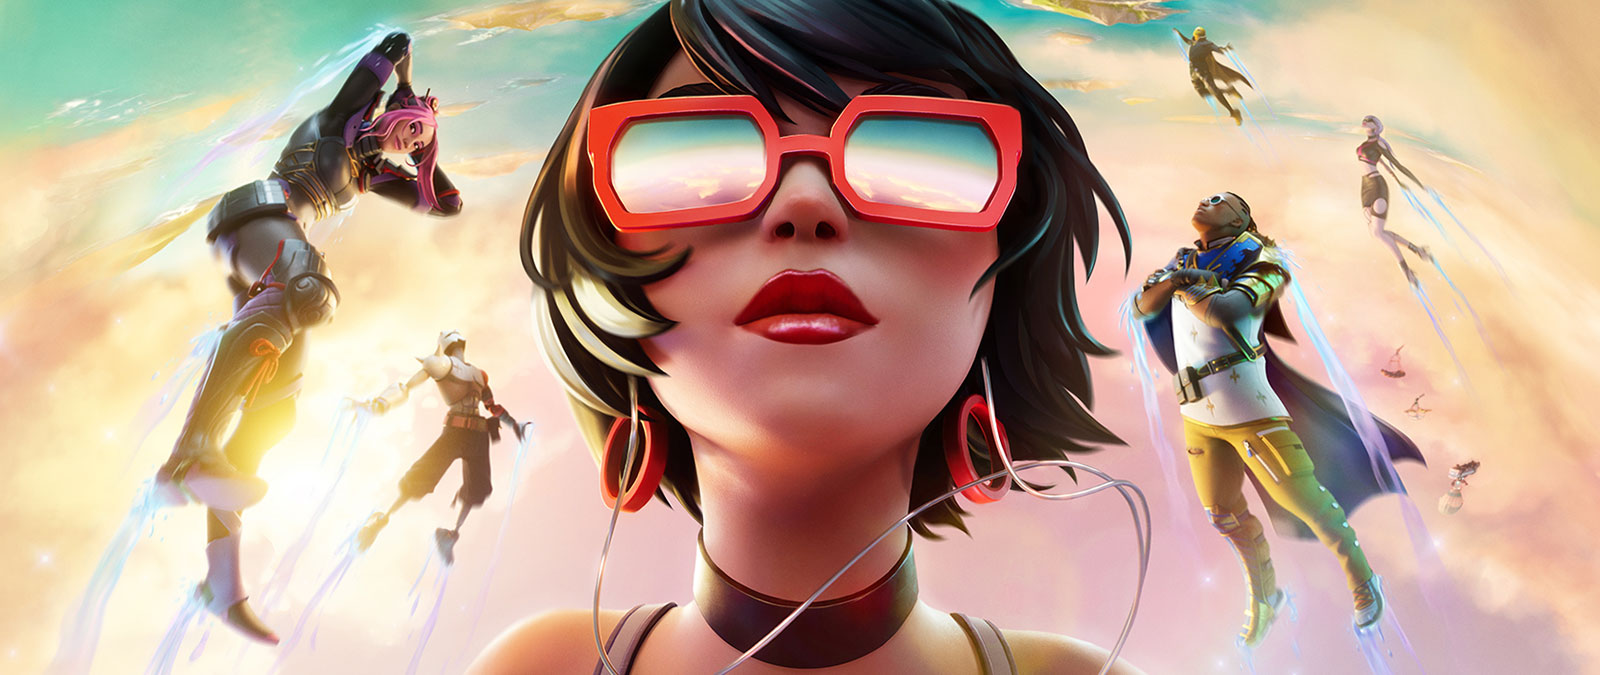 Une fille portant des lunettes de soleil rouges flotte dans les nuages avec d’autres personnages devant un ciel aux teintes pastels.